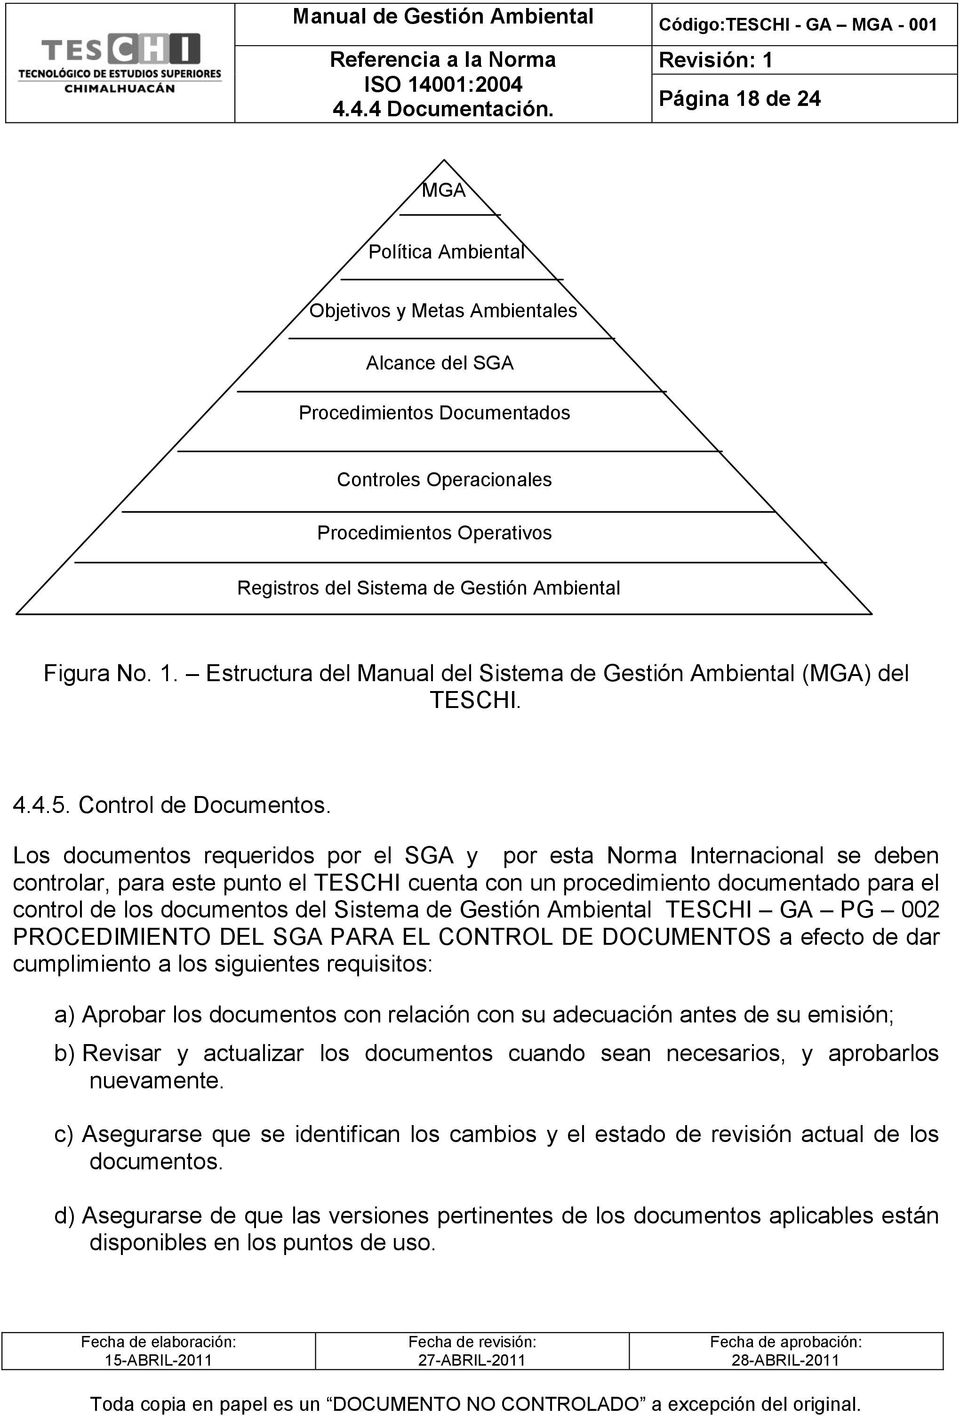 Los documentos requeridos por el SGA y por esta Norma Internacional se deben controlar, para este punto el TESCHI cuenta con un procedimiento documentado para el control de los documentos del Sistema